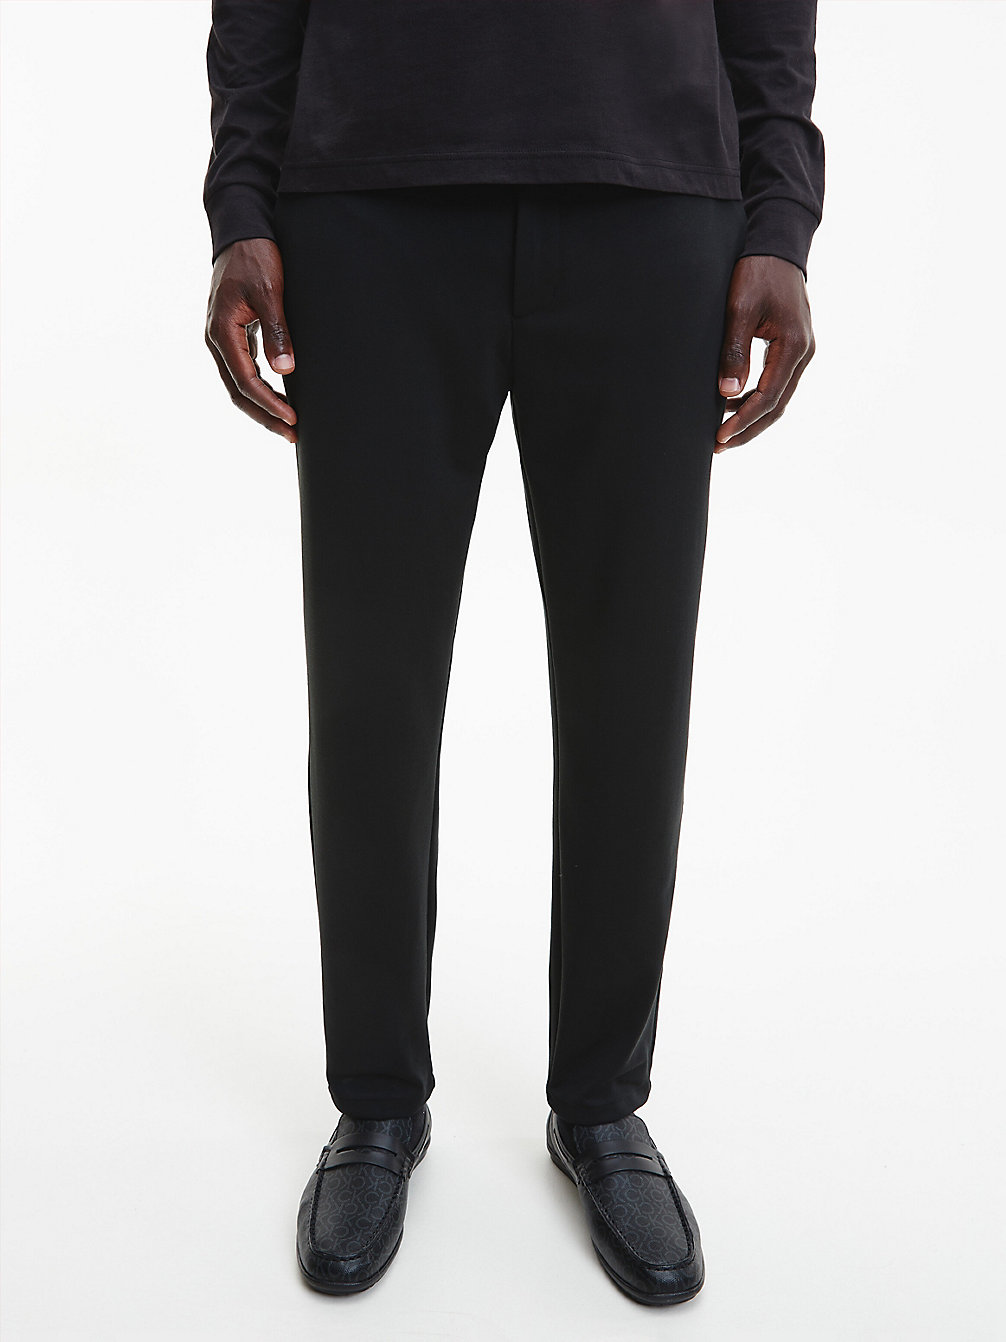 CK BLACK Pantalon Fuselé En Polyester Recyclé undefined hommes Calvin Klein